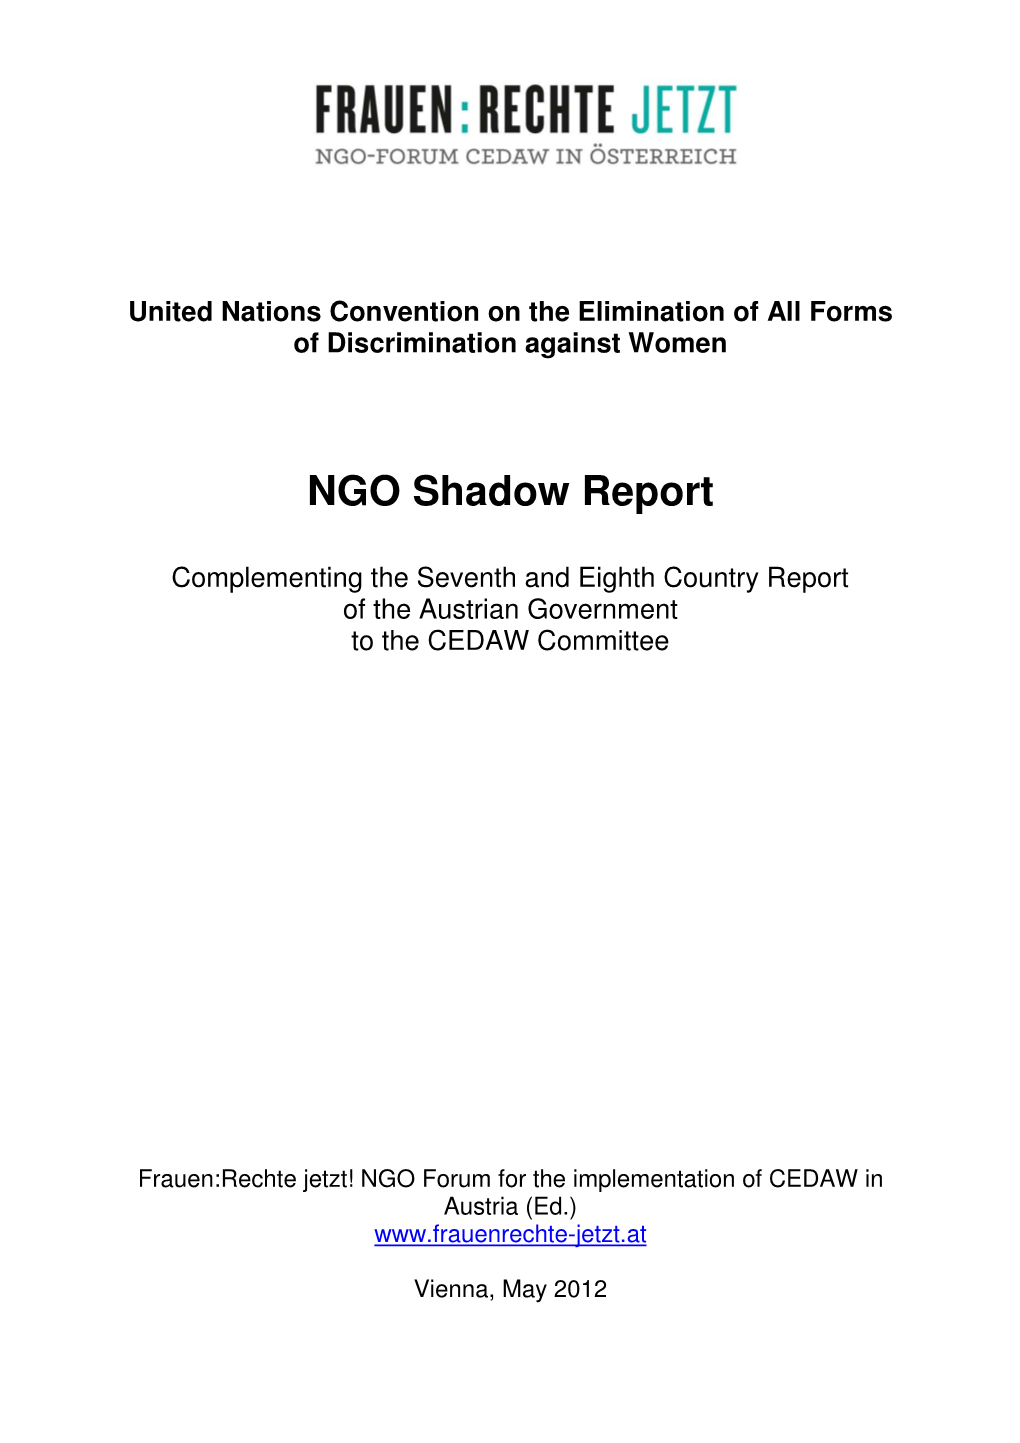 NGO Shadow Report